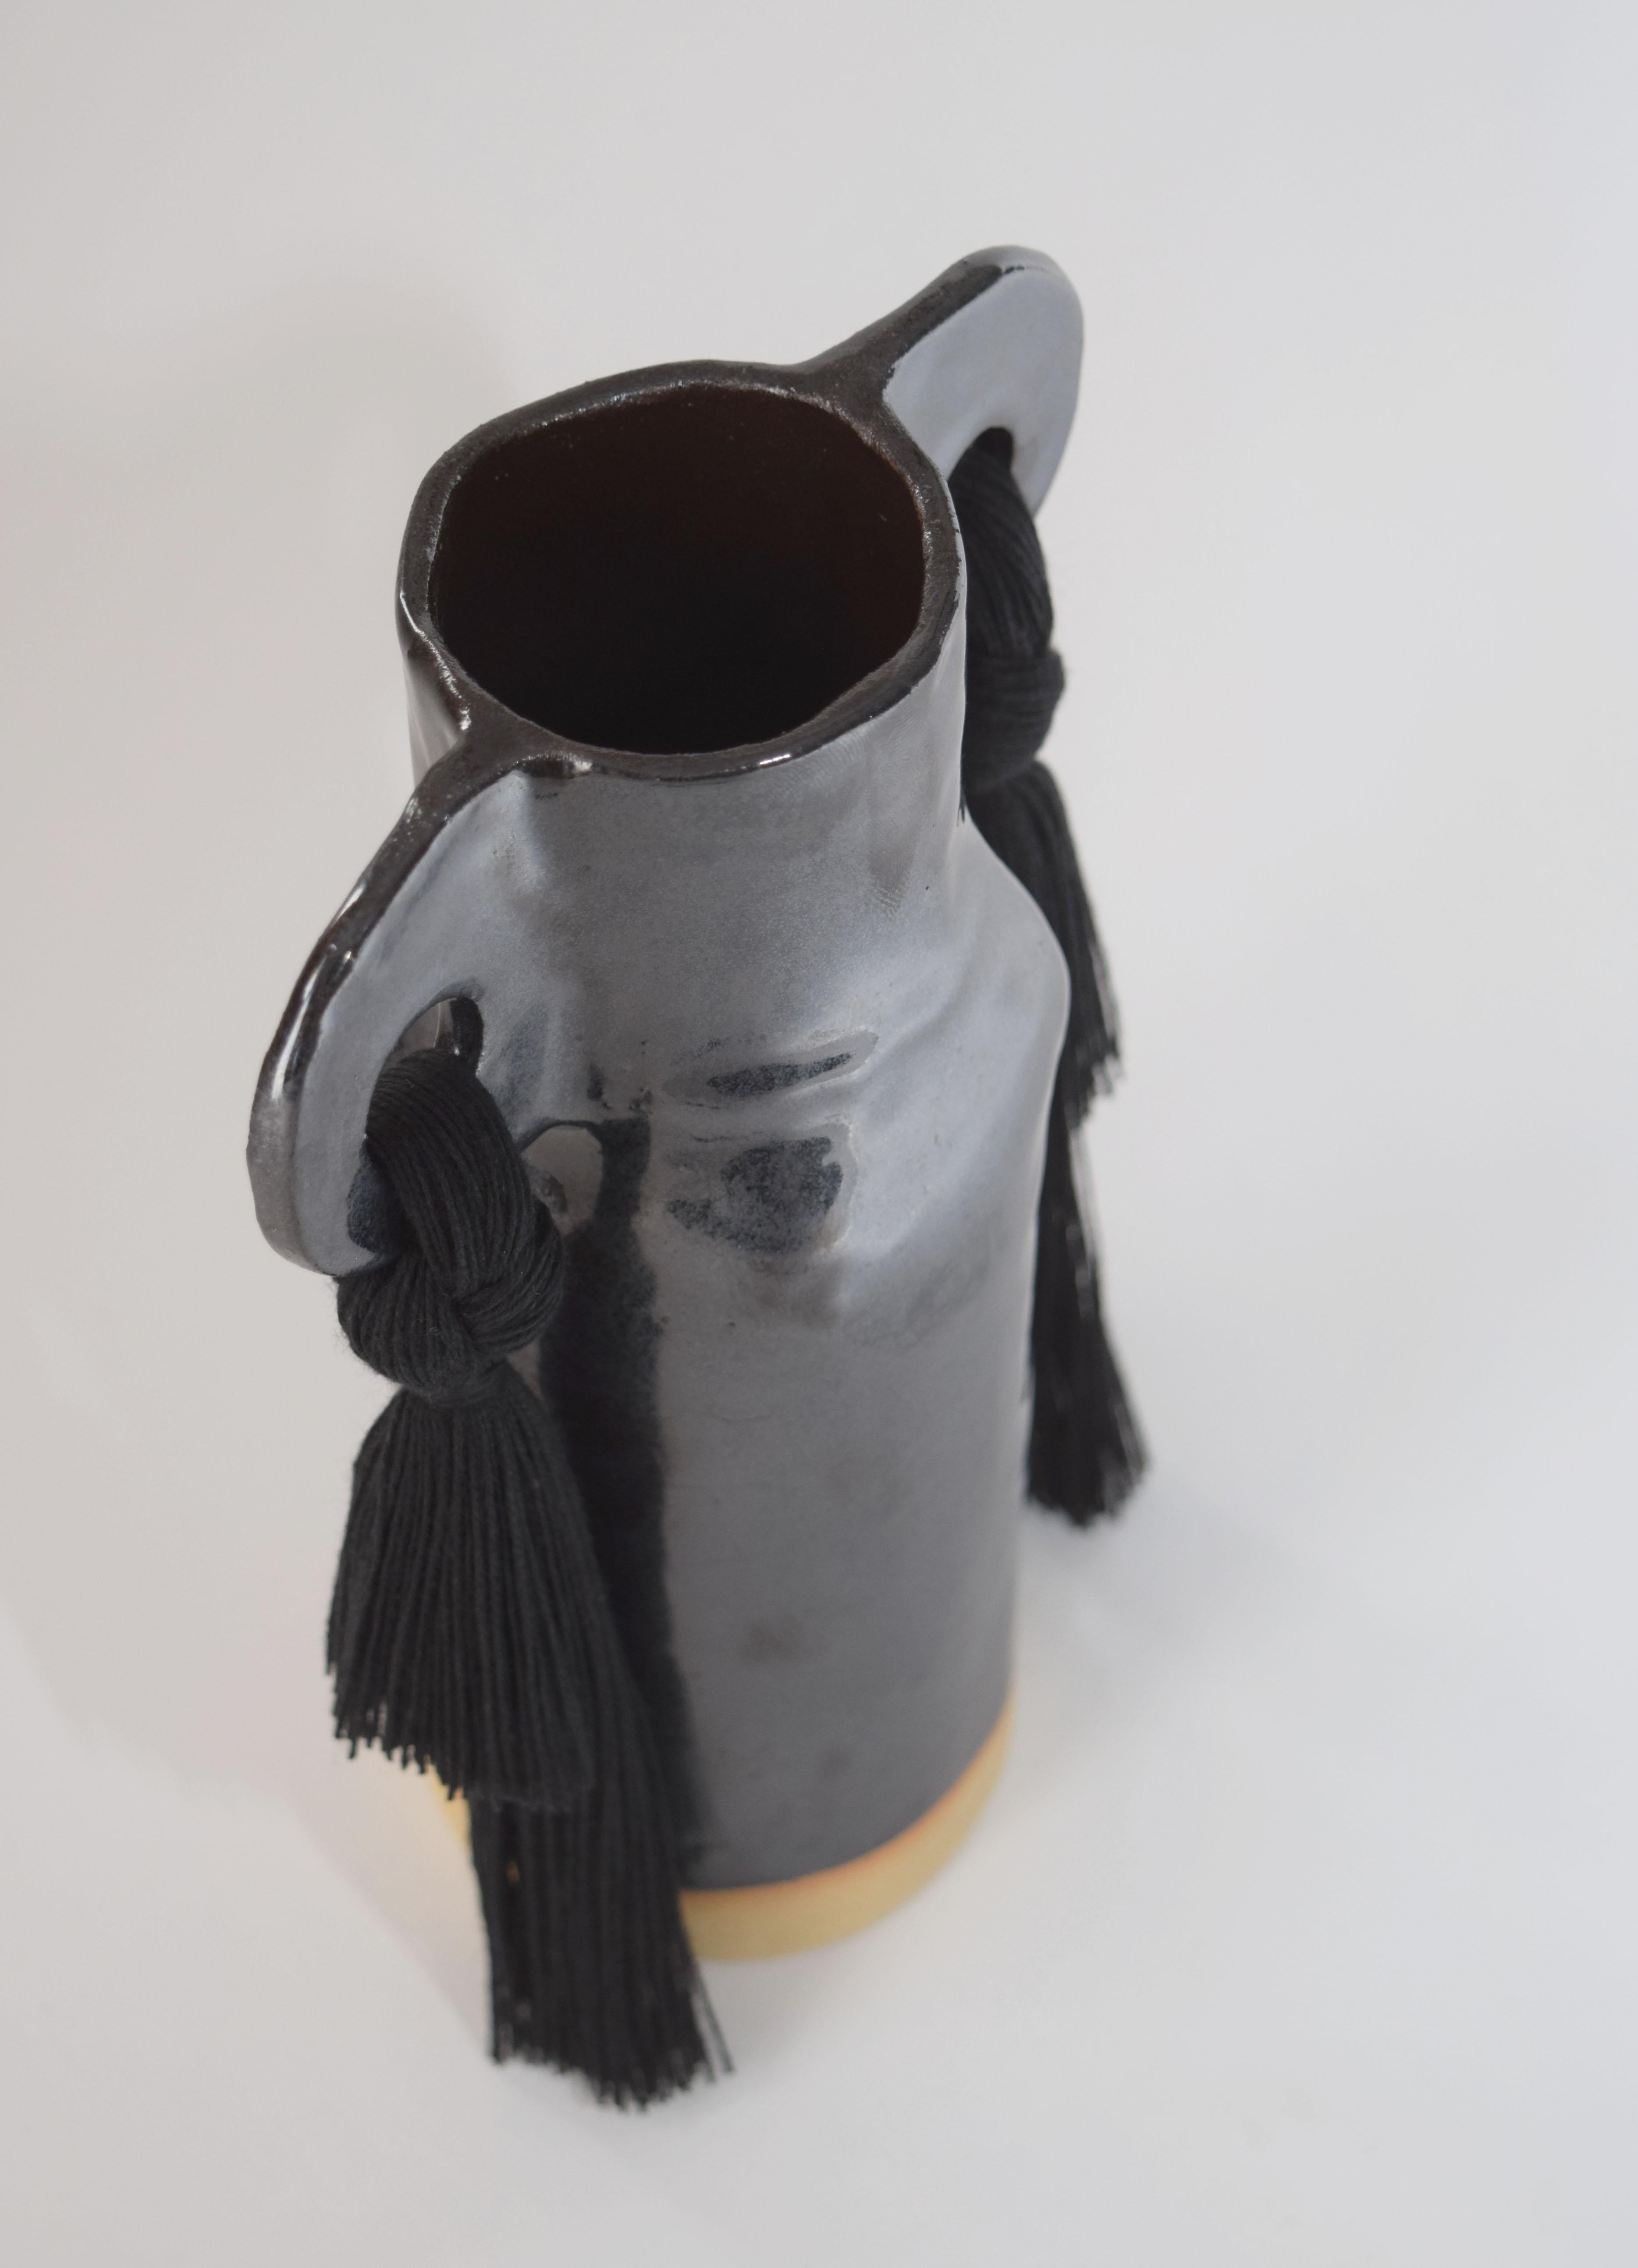 American Handmade Ceramic Vase #606 in Black Glaze with Cotton Fringe Details For Sale